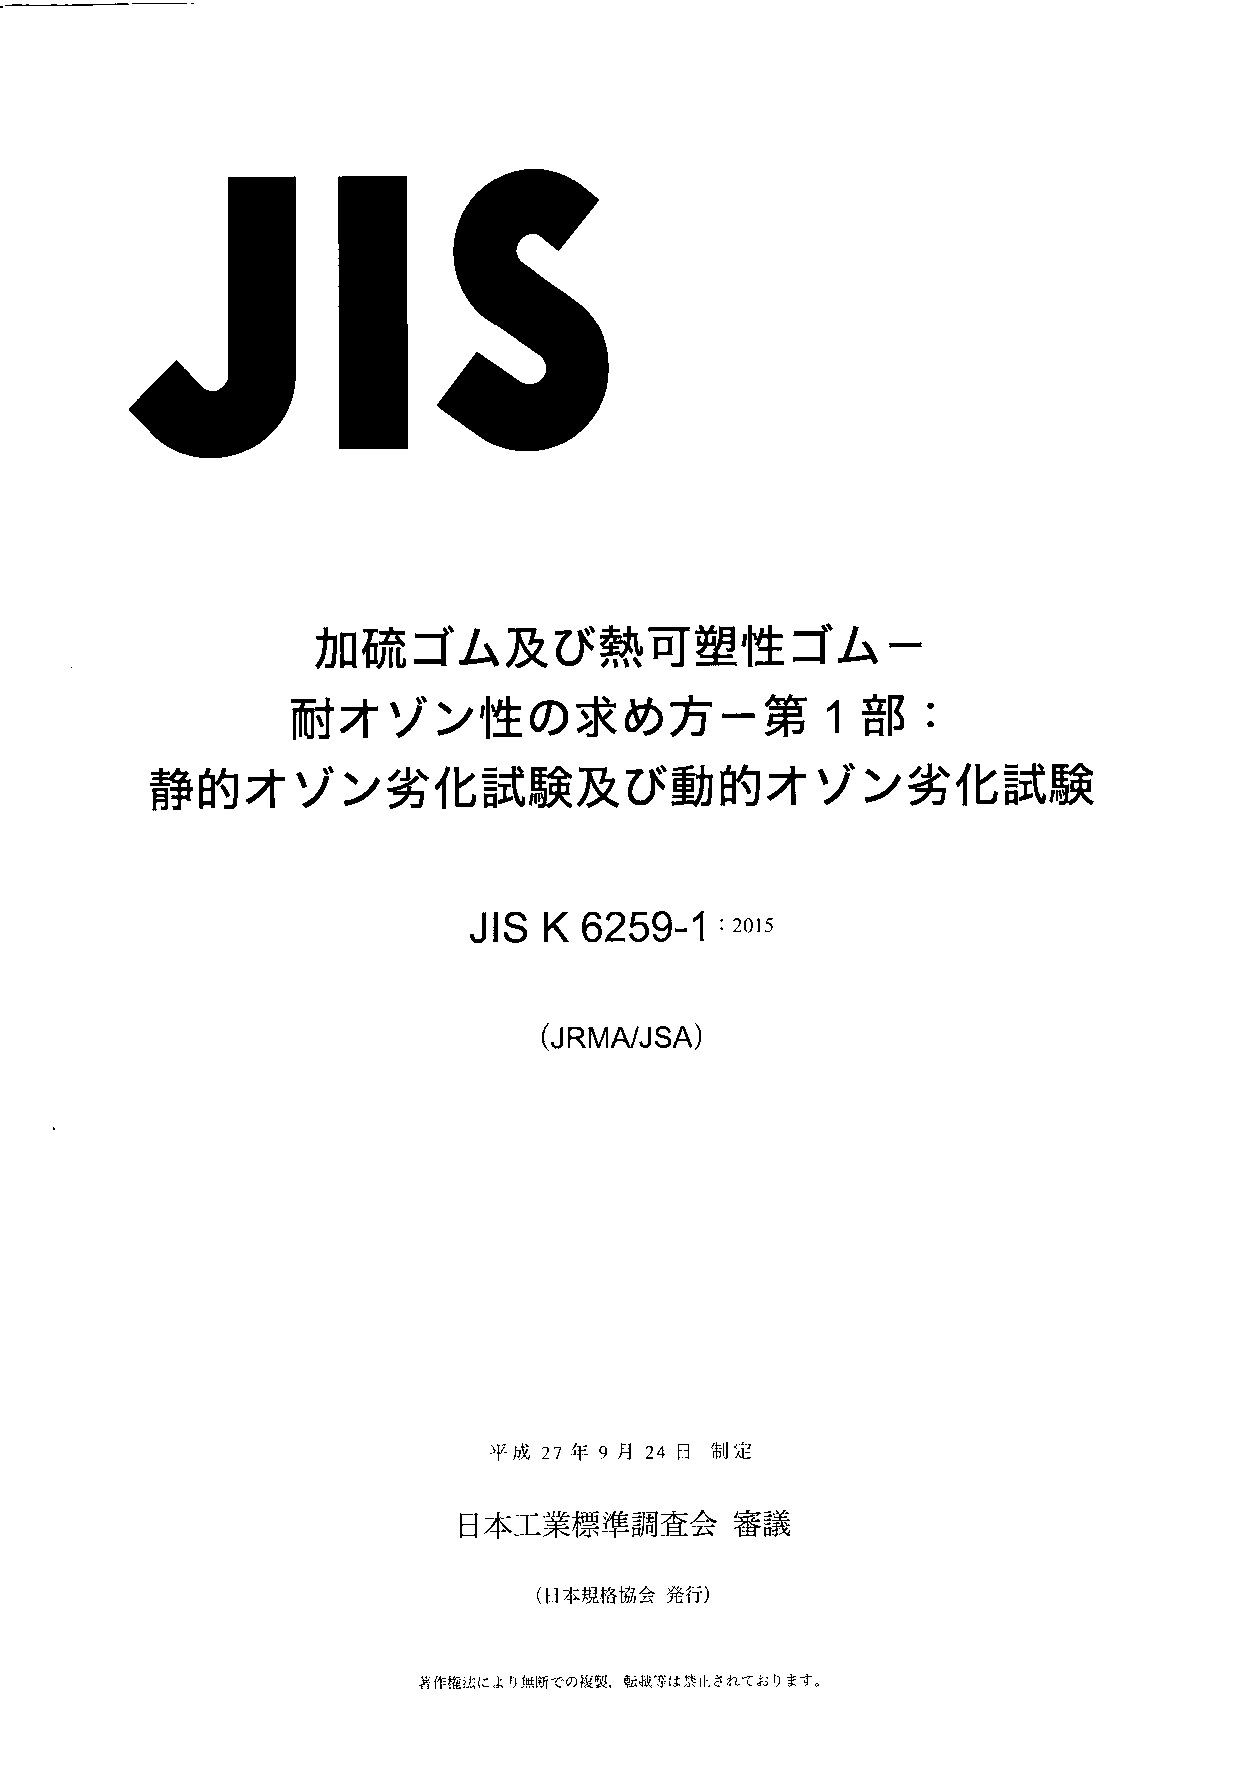 JIS K 6259-1:2015封面图